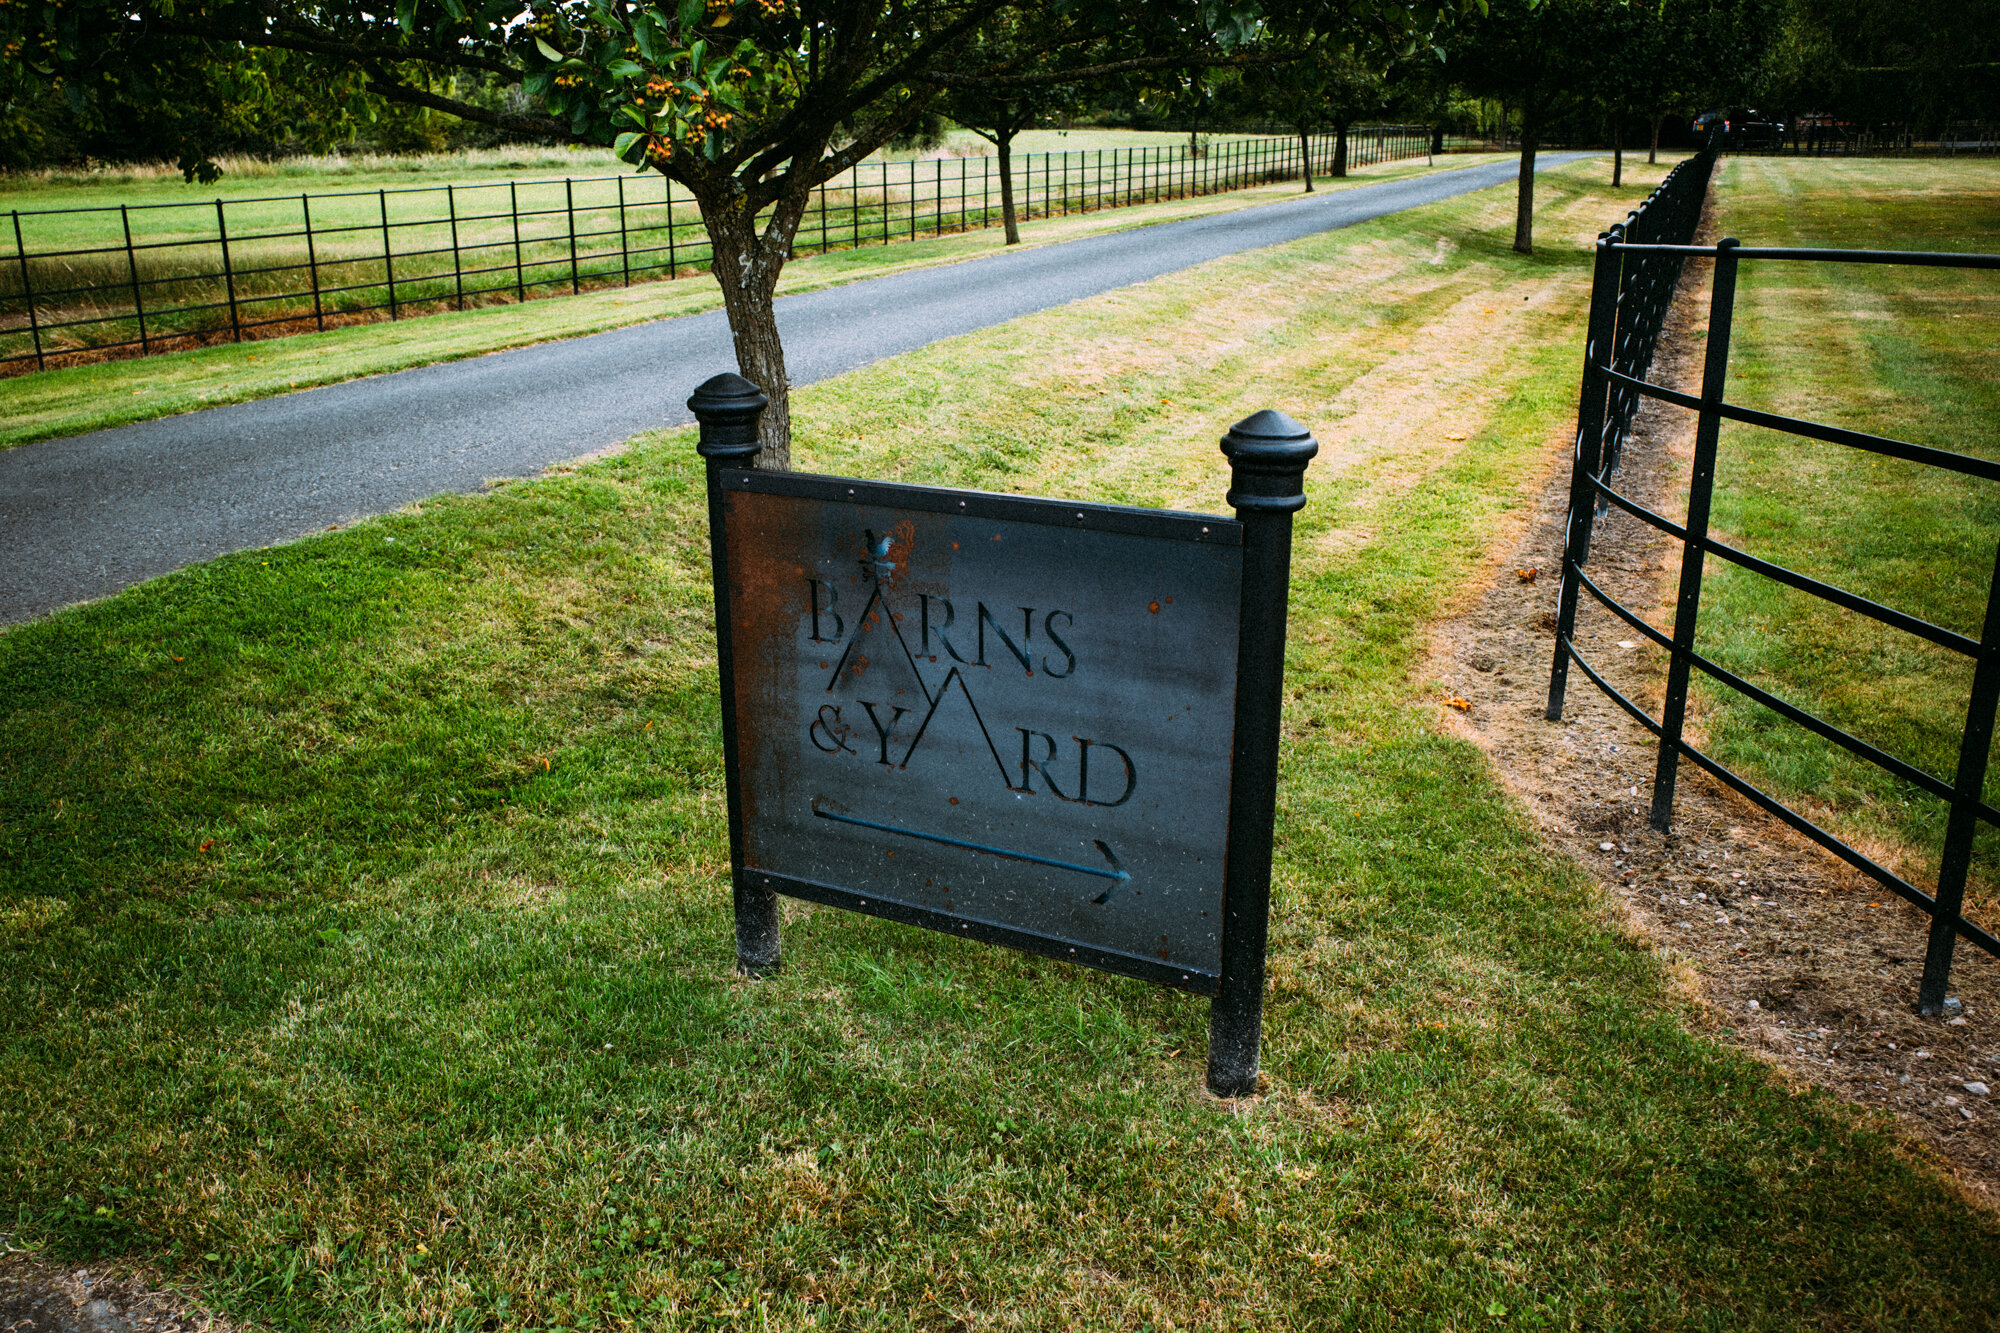 The Barns &amp; Yard sign